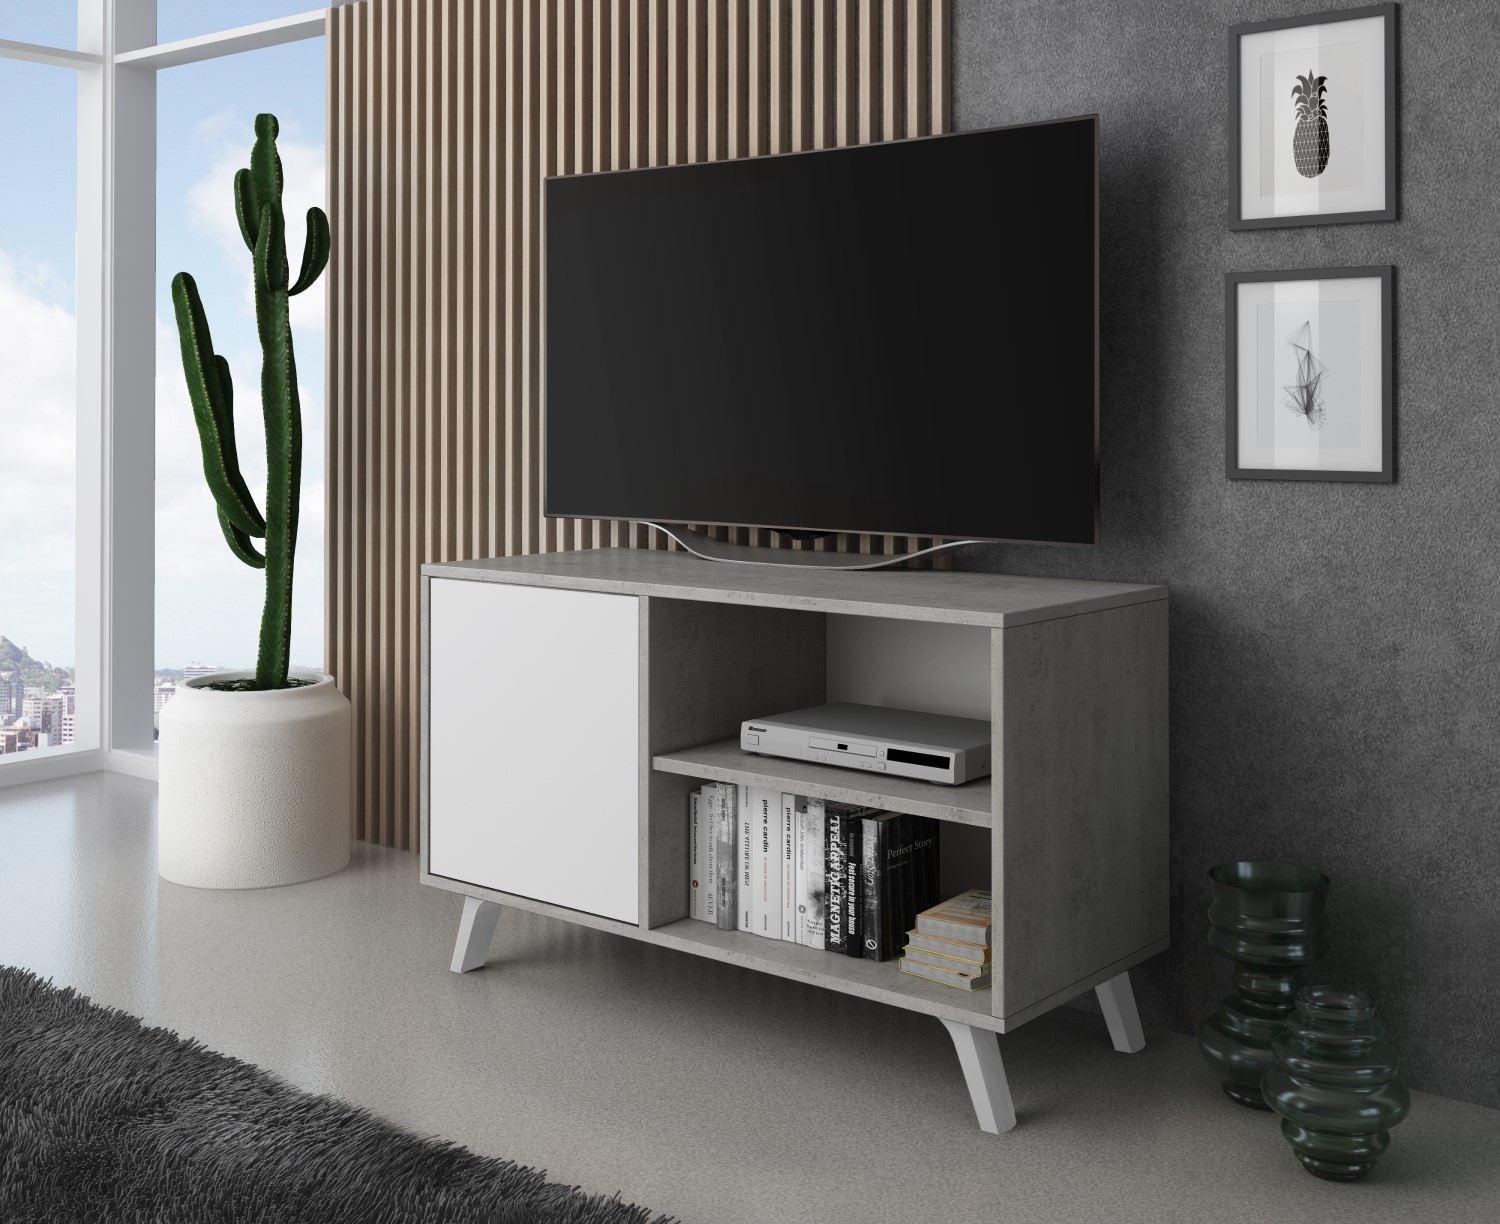 Mueble TV 100 con puerta izquierda, salón comedor, Modelo WIND, color  estructura CEMENTO, color puerta Blanco Mate, medidas 95x40x57cm de altura.